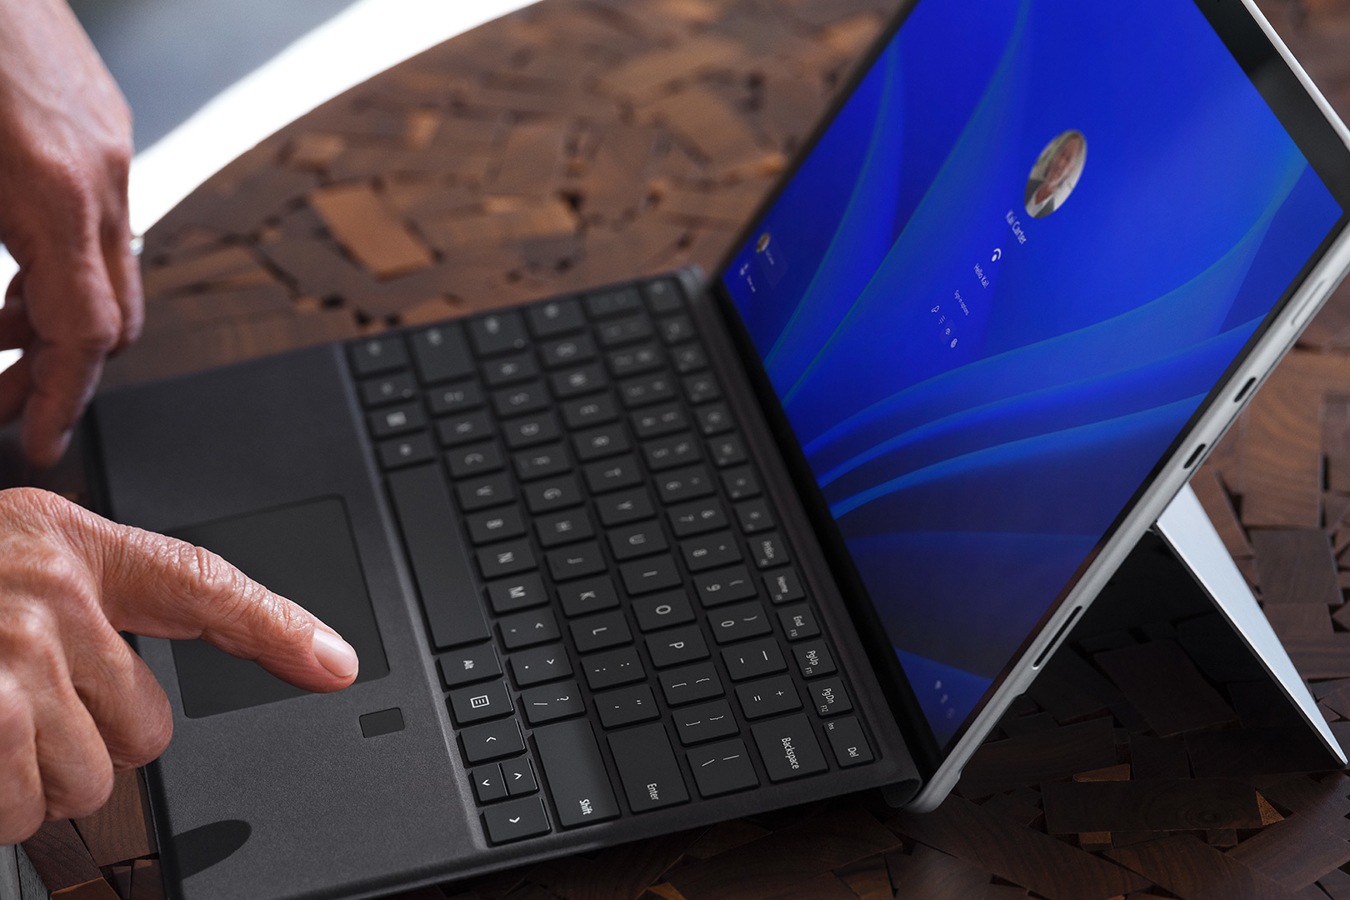 El dedo de una persona sobre la característica de inicio de sesión mediante datos biométricos del Teclado Signature para Surface Pro